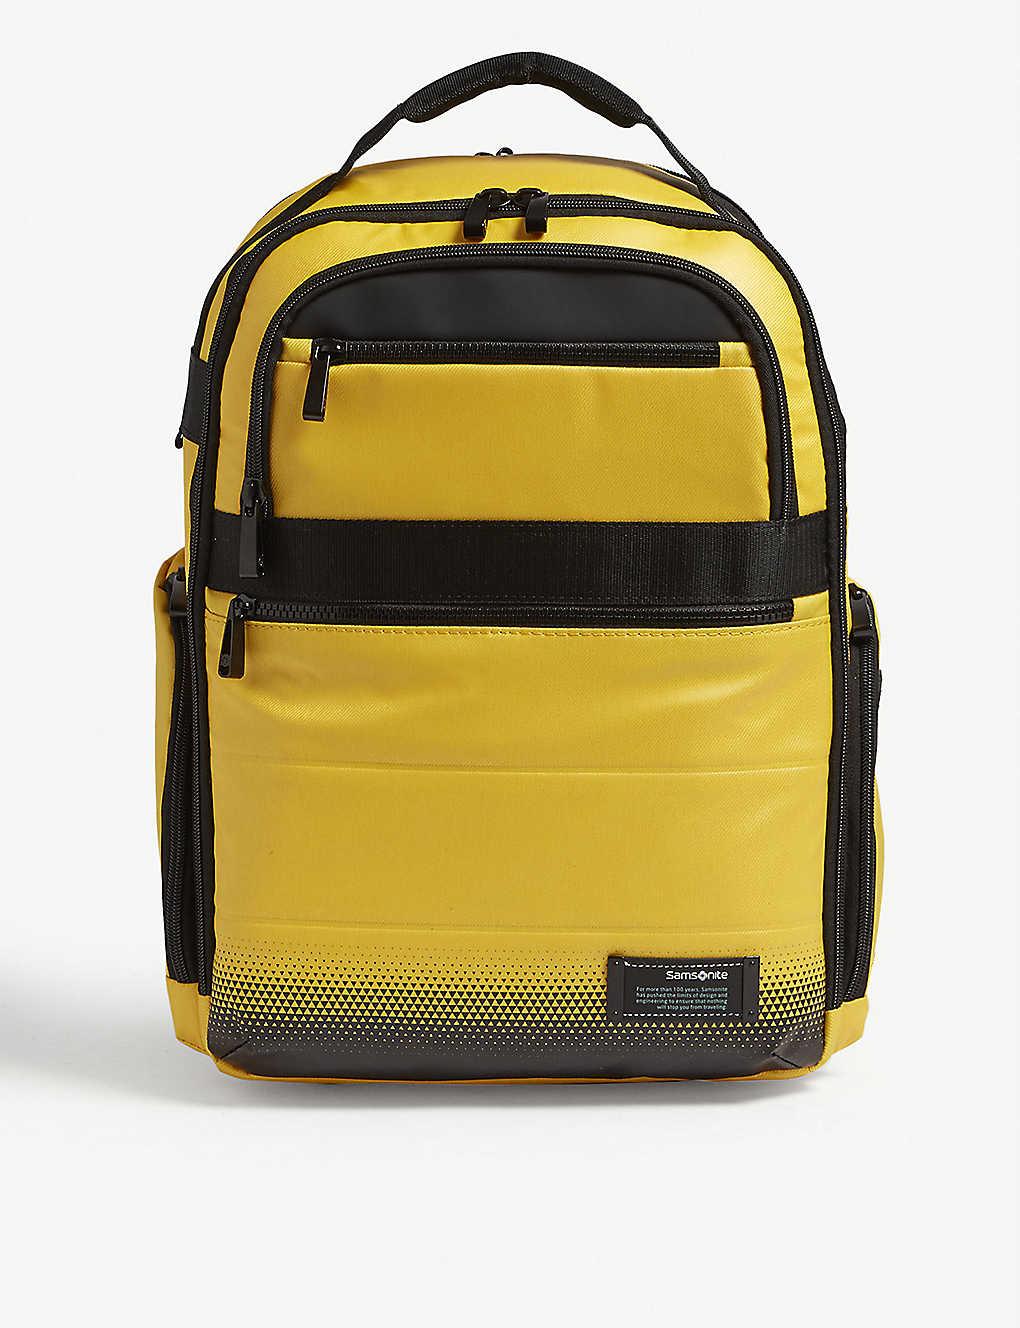 verlangen Inloggegevens Overtreden Samsonite Golden Yellow Cityvibe 2.0 Laptop Backpack | Lyst